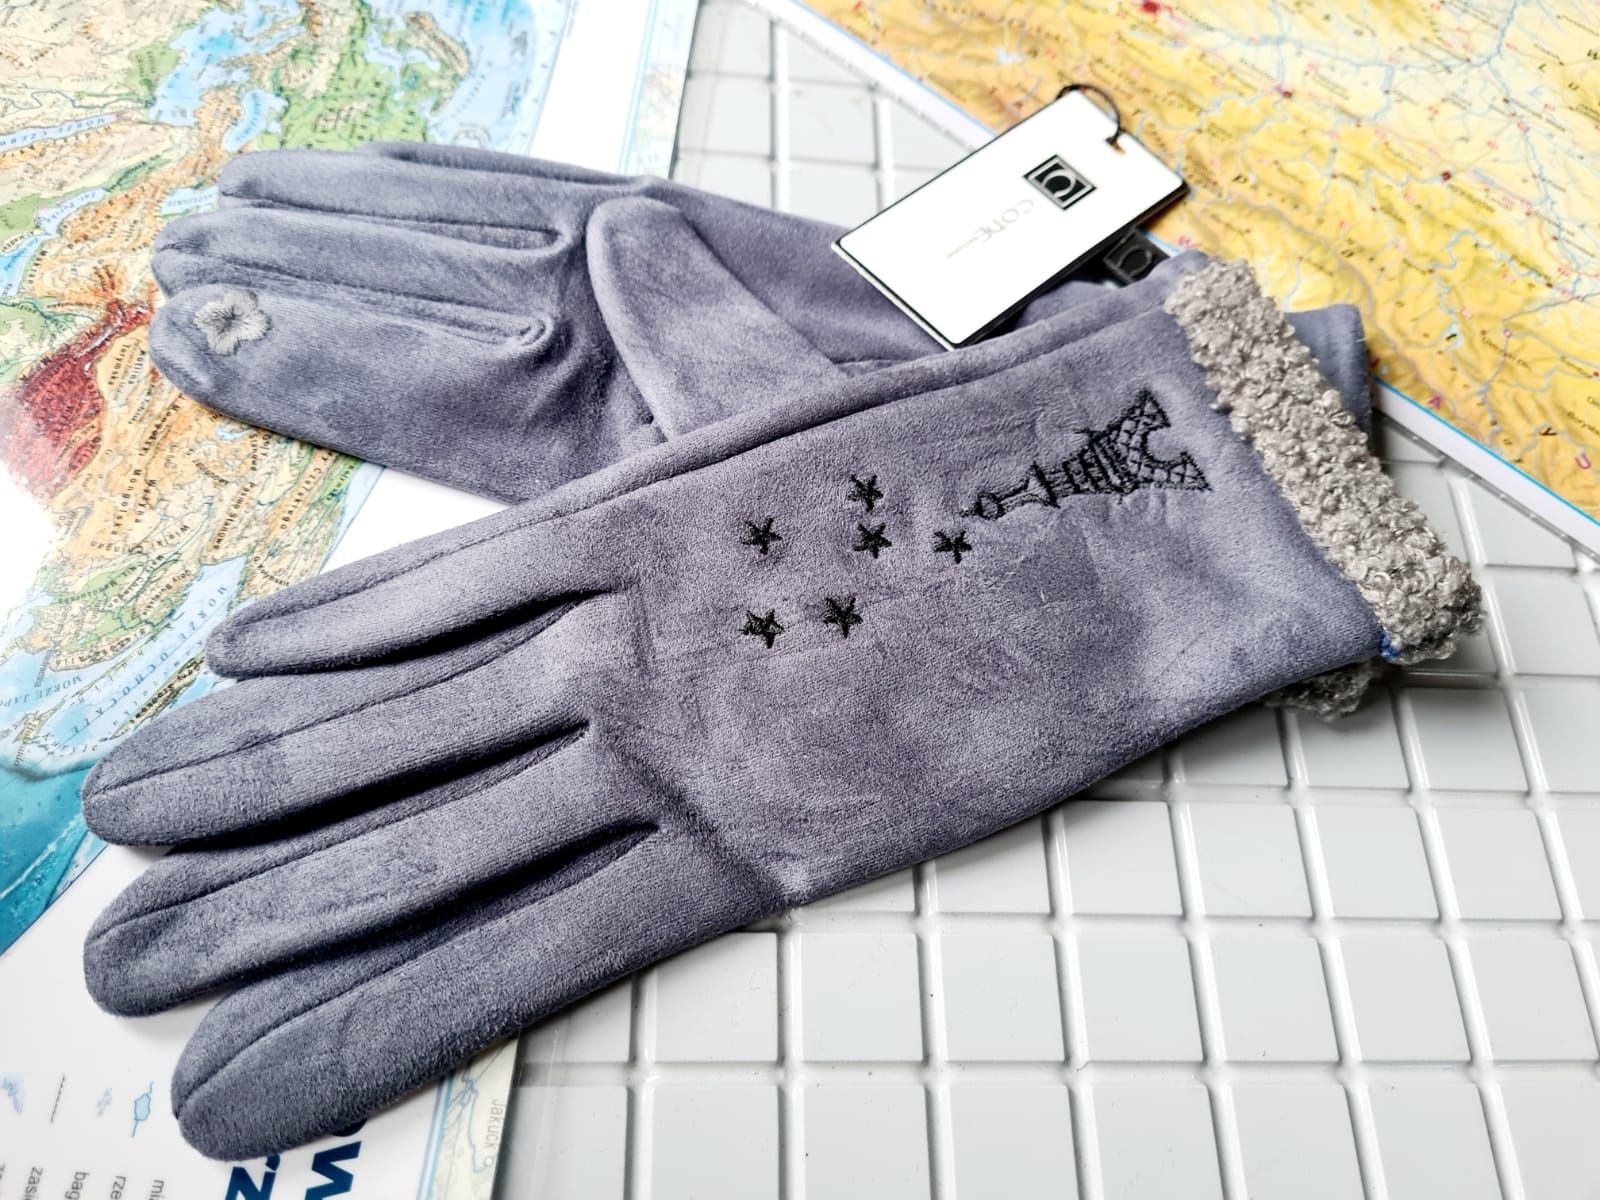 Code modne zimowe damskie rękawiczki nowe ocieplane